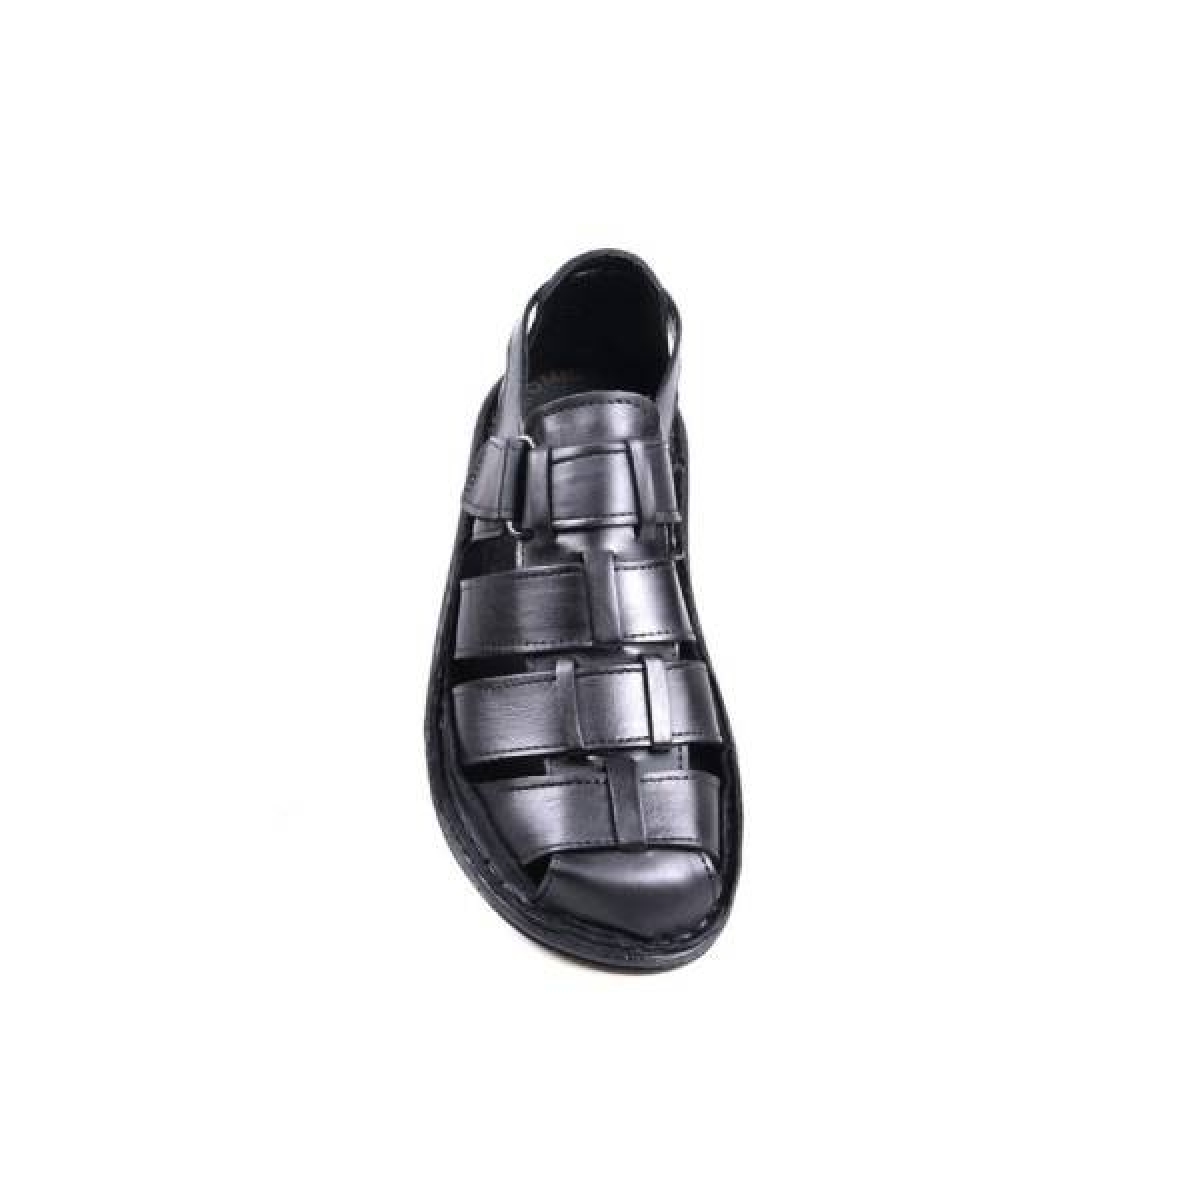 Flo Men Shoes 1001 Ortapedik Siyah Sandalet Ayakkabı. 2